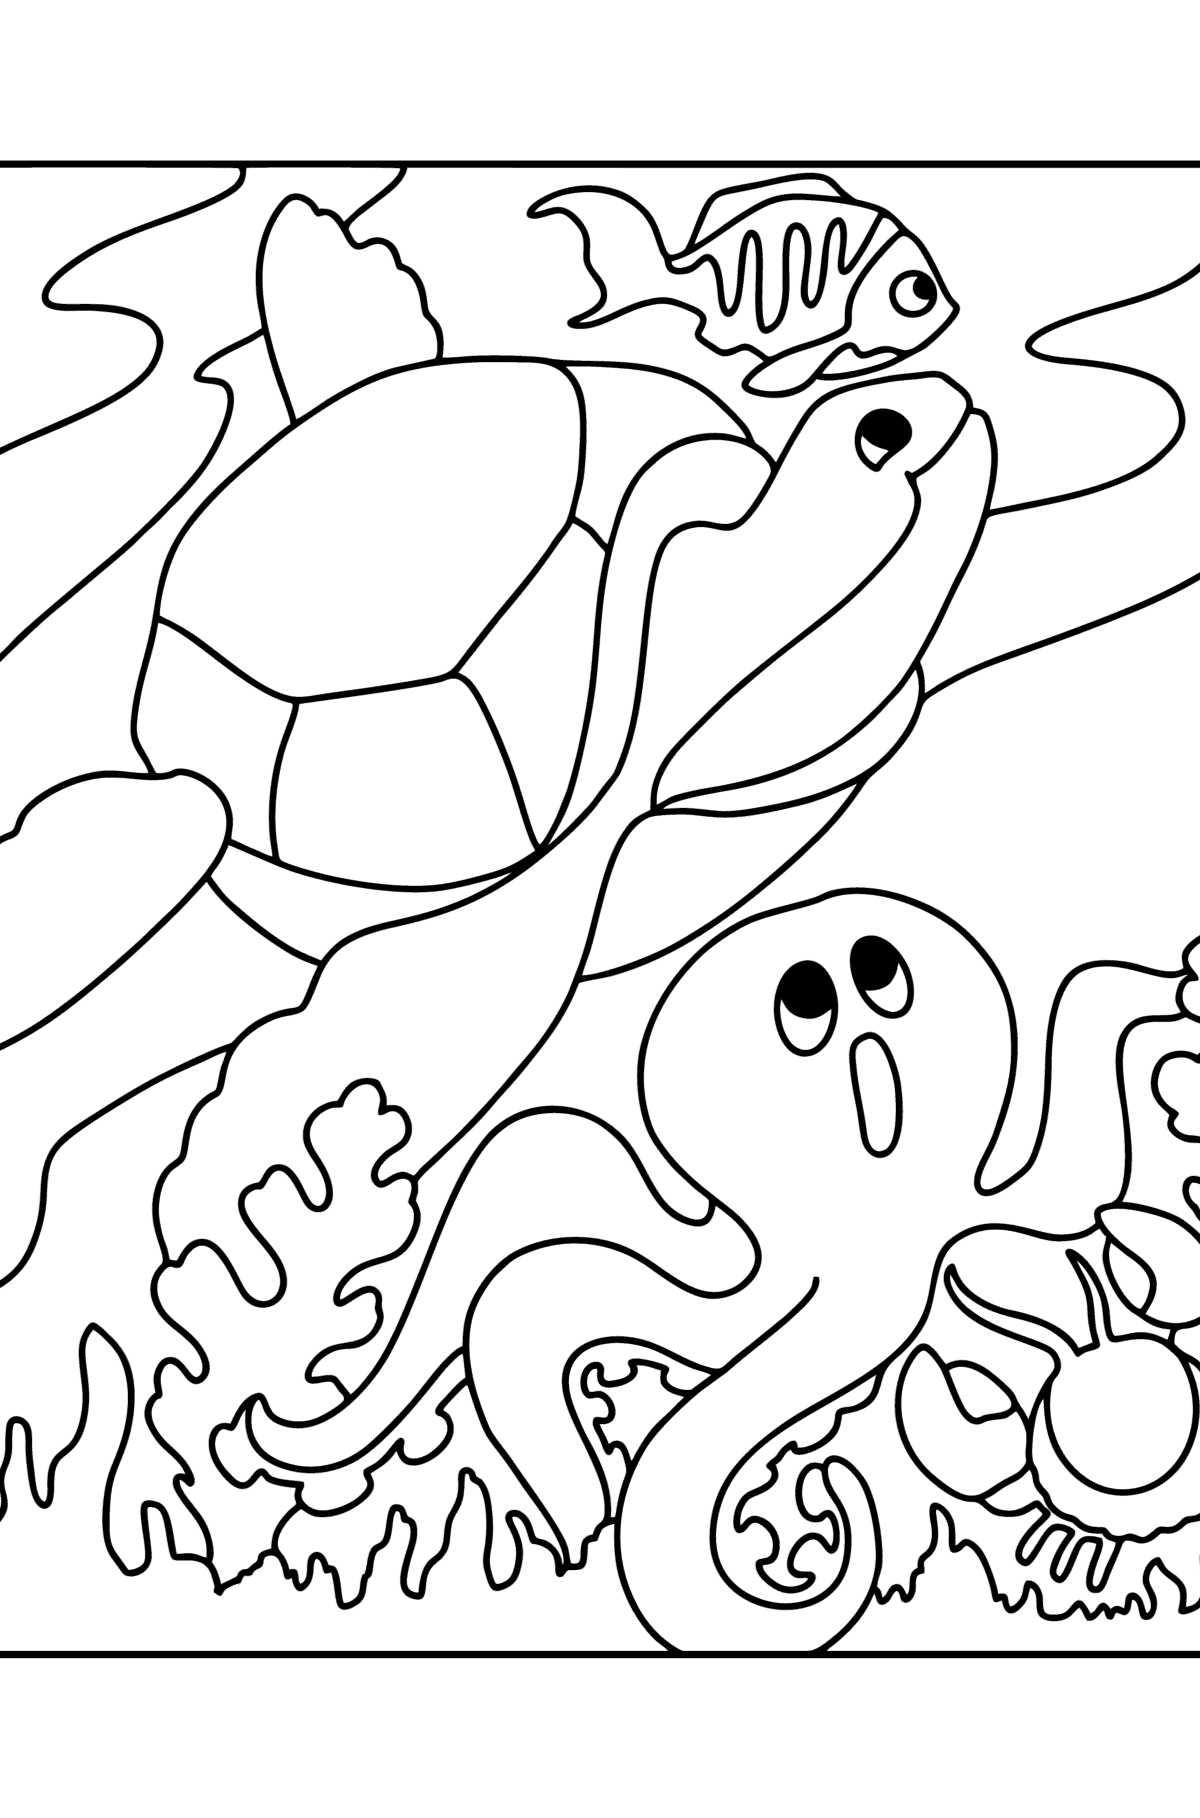 Desenho de Peixe, Tartaruga, Caranguejo e Polvo para colorir - Imagens para Colorir para Crianças